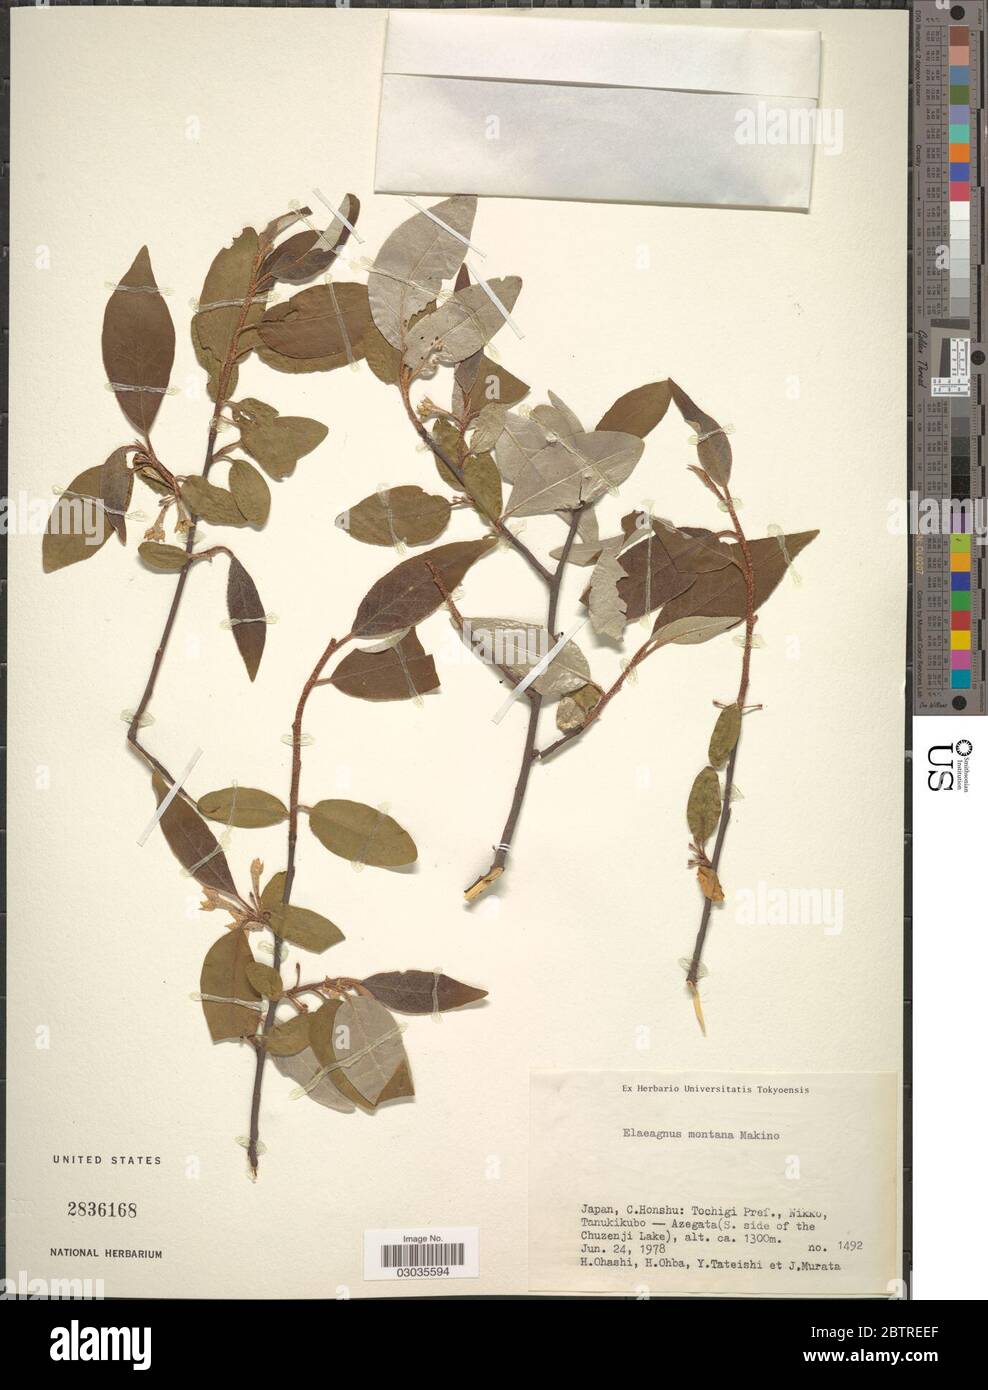 Elaeagnus montana Makino. Stock Photo